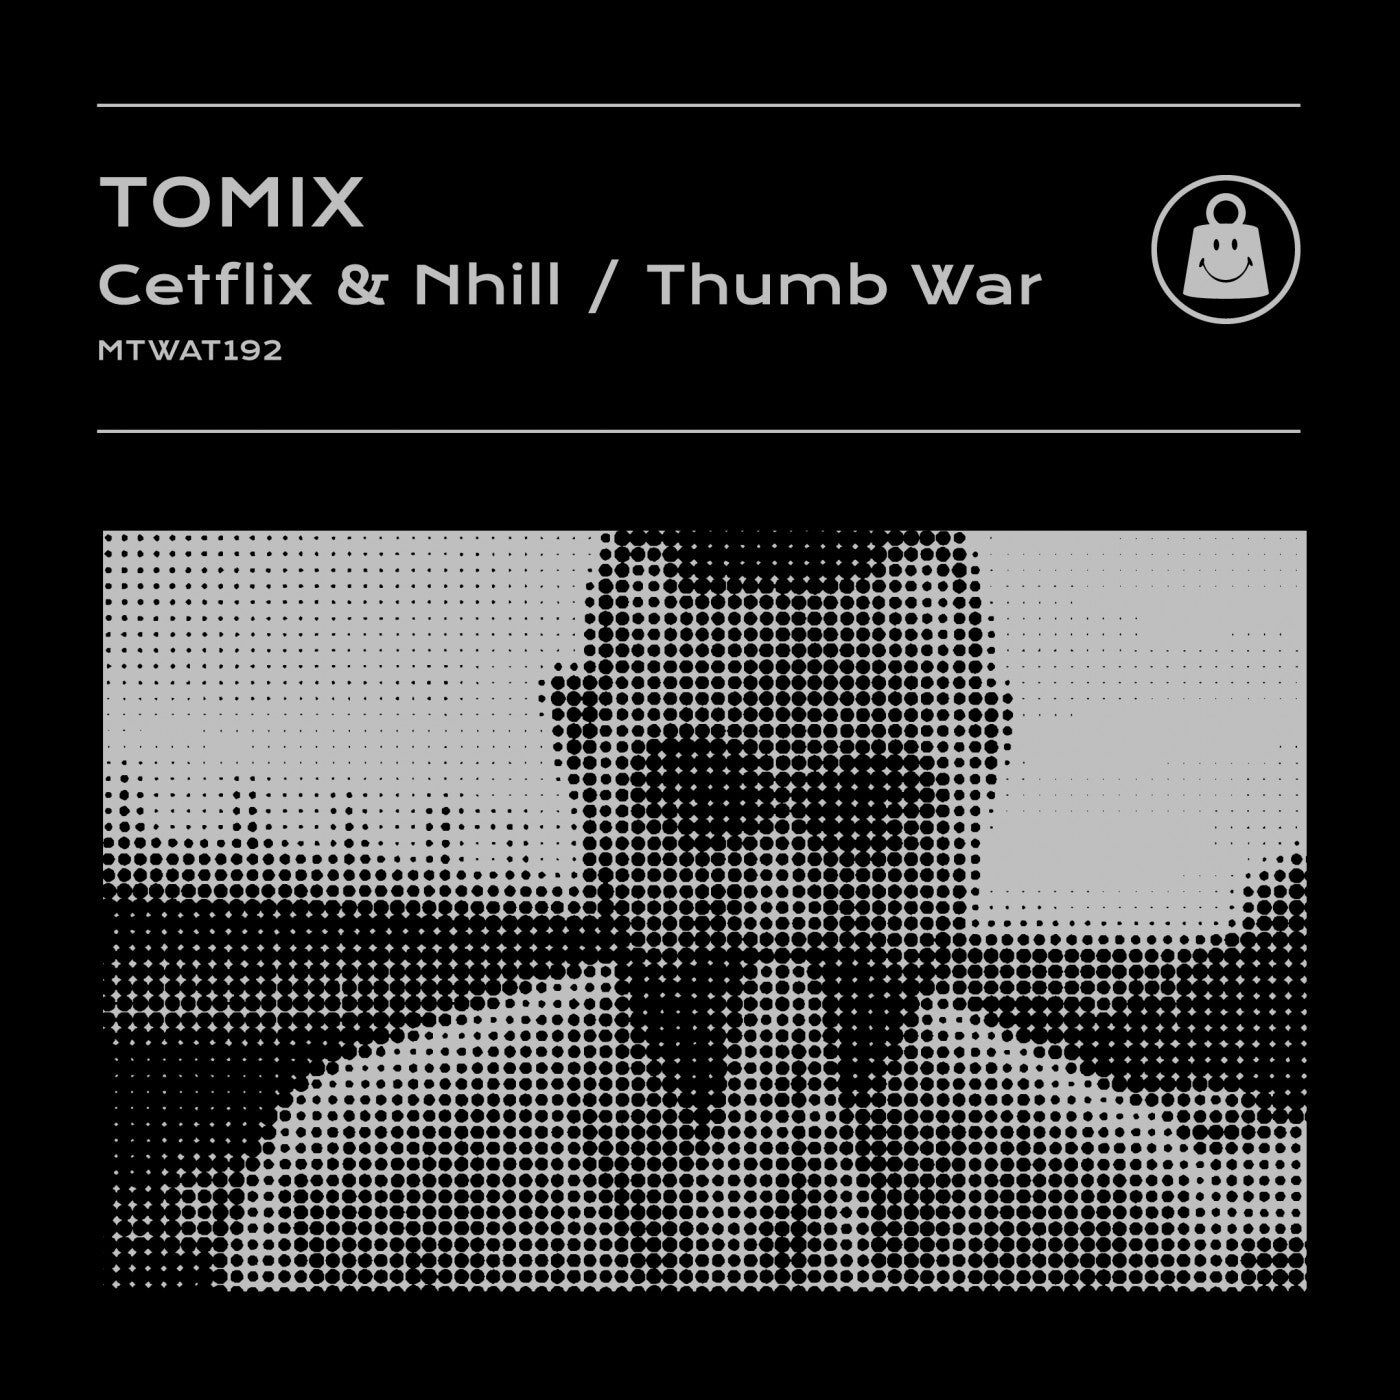 Cetflix & Nhill / Thumb War